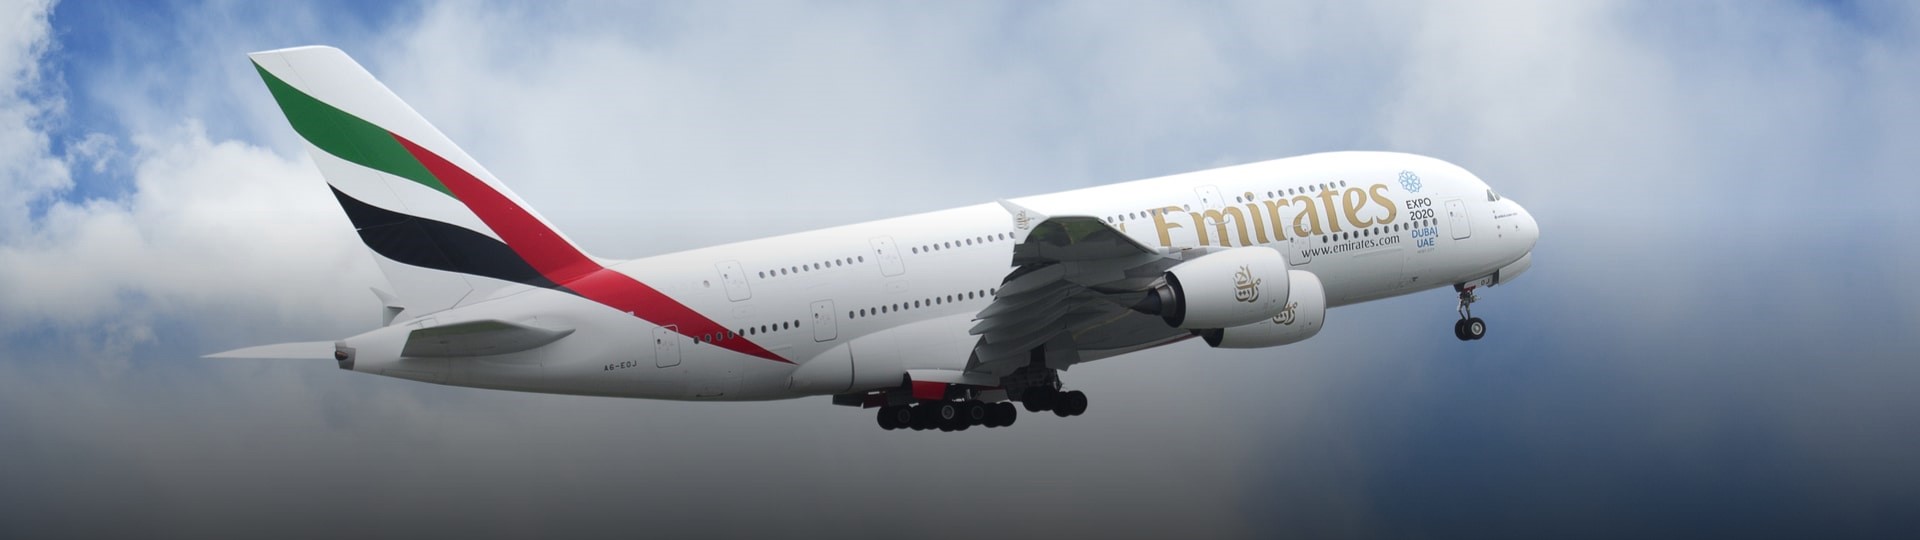 Aerolinky Emirates vykázaly první celoroční ztrátu za 30 let